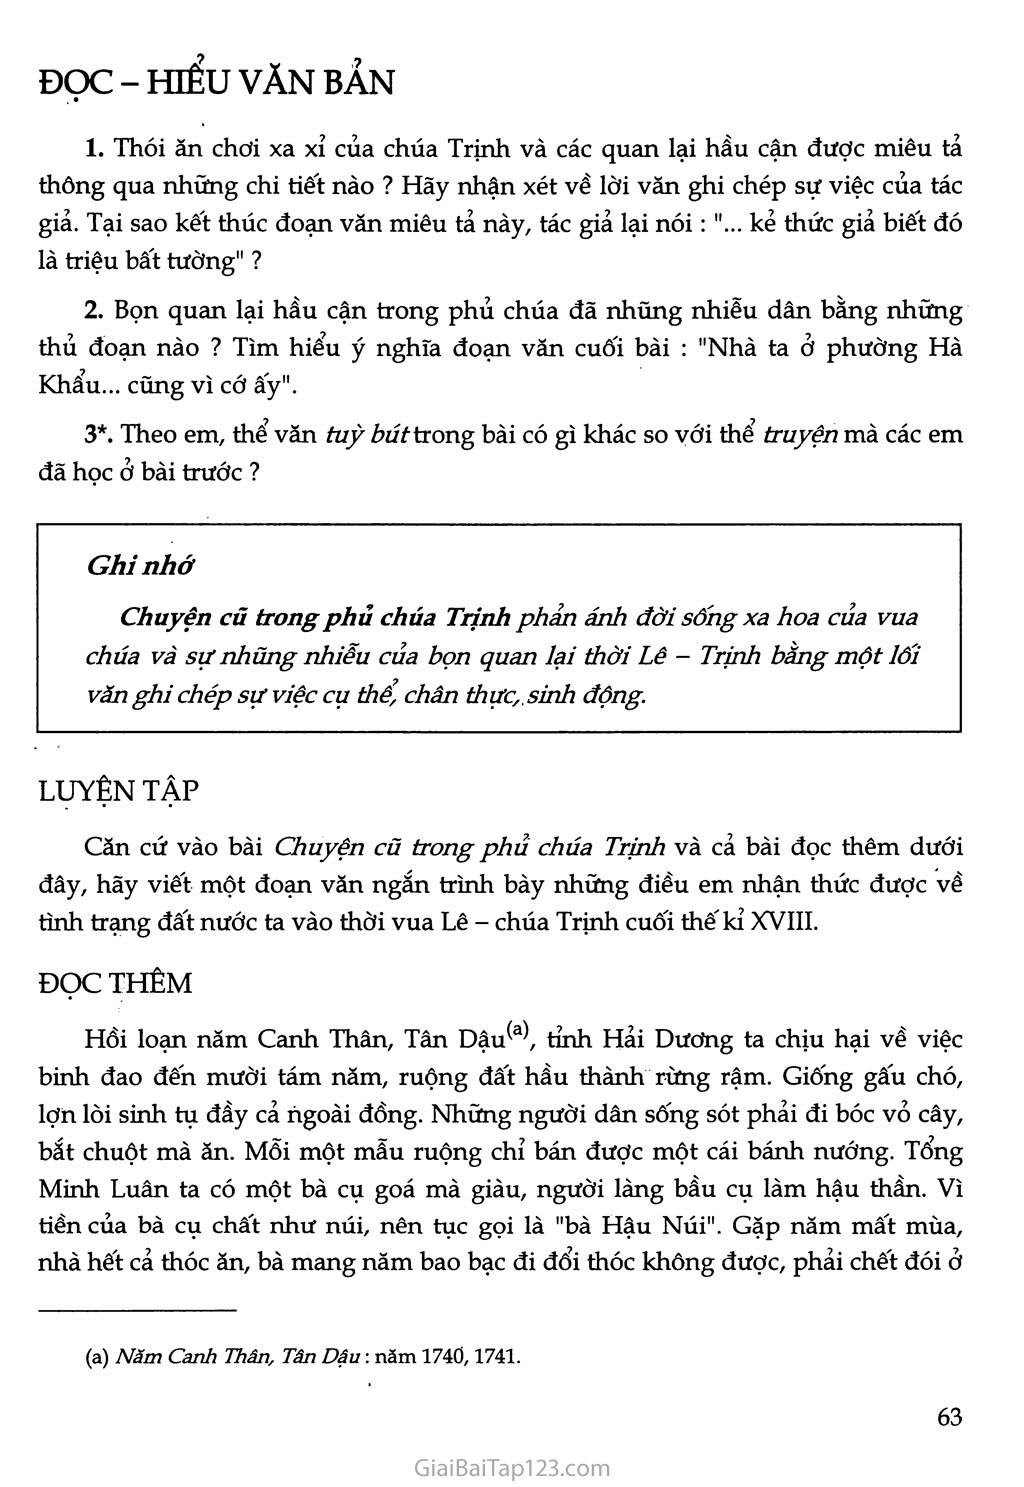 Chuyện cũ trong phủ chúa Trịnh (trích Vũ trung tuỳ bút) trang 4